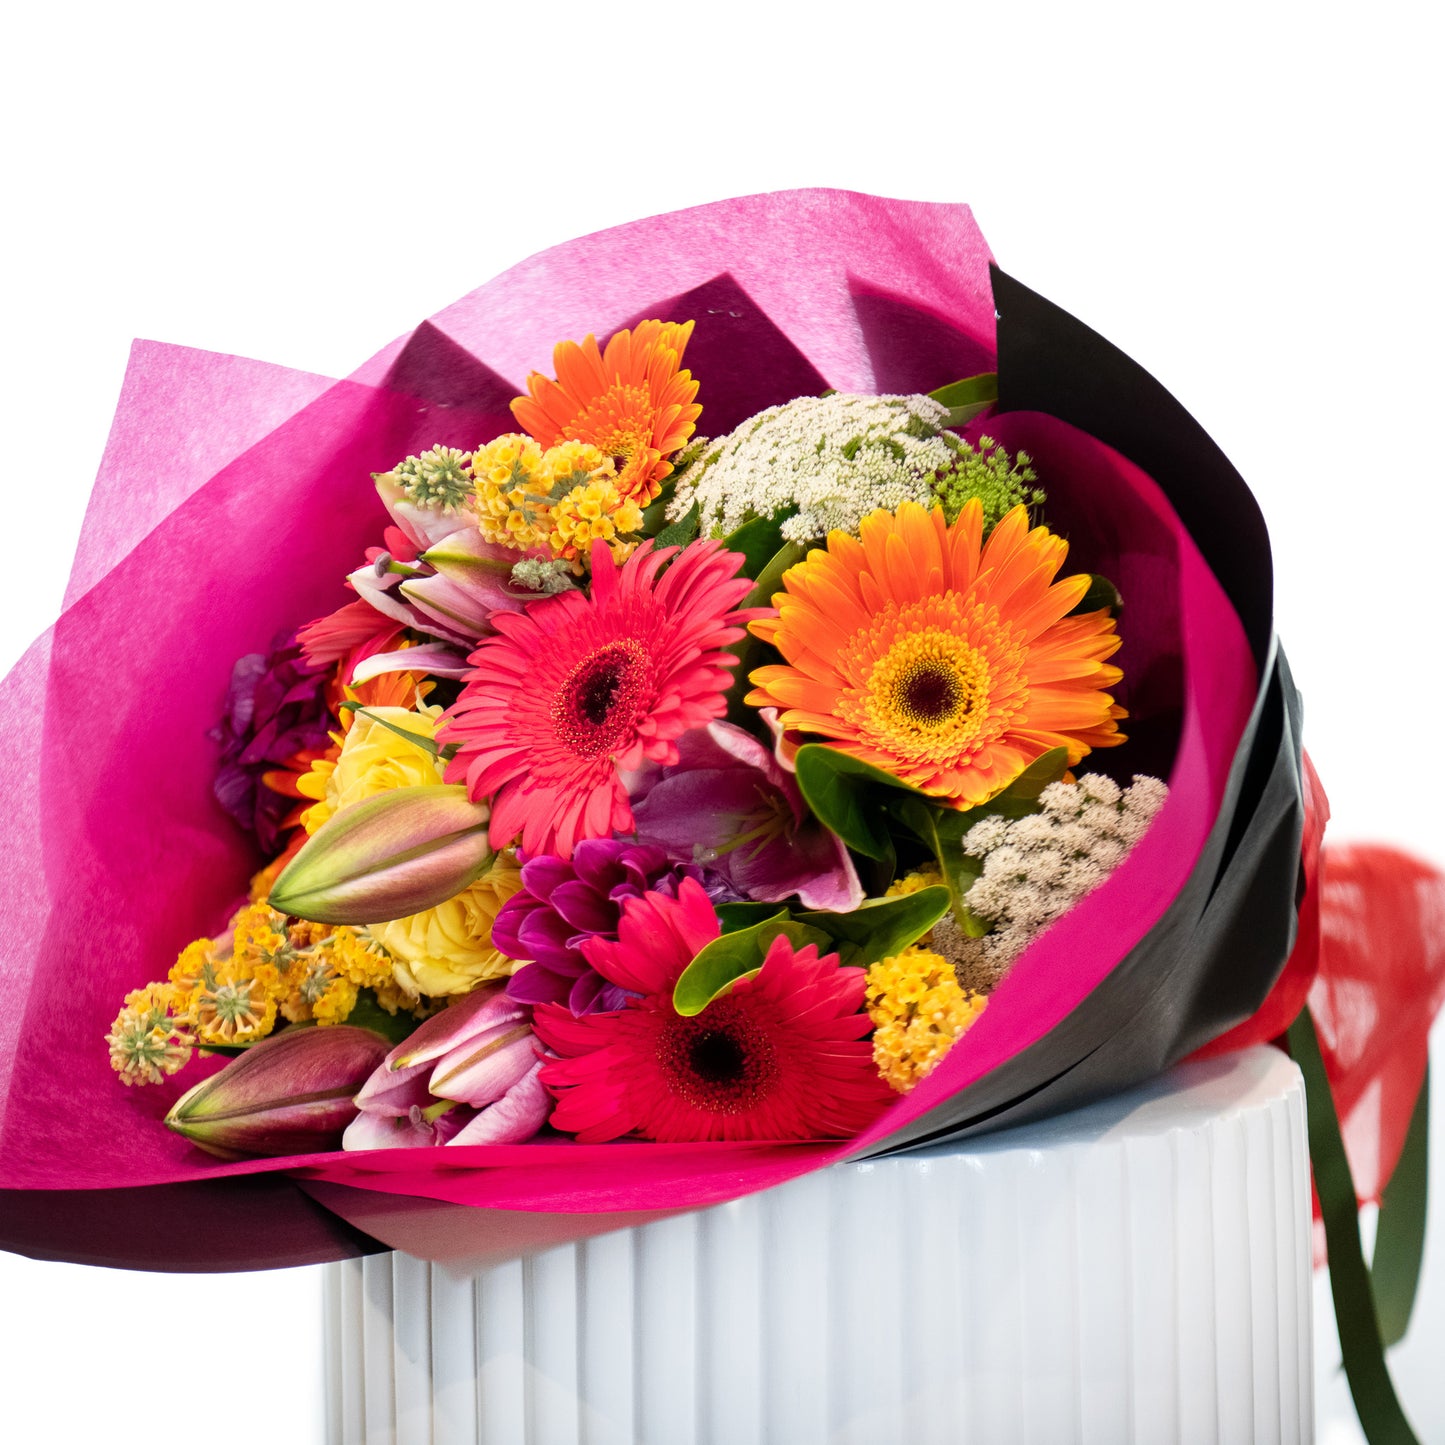 Florist Choice Bouquet - Radiance